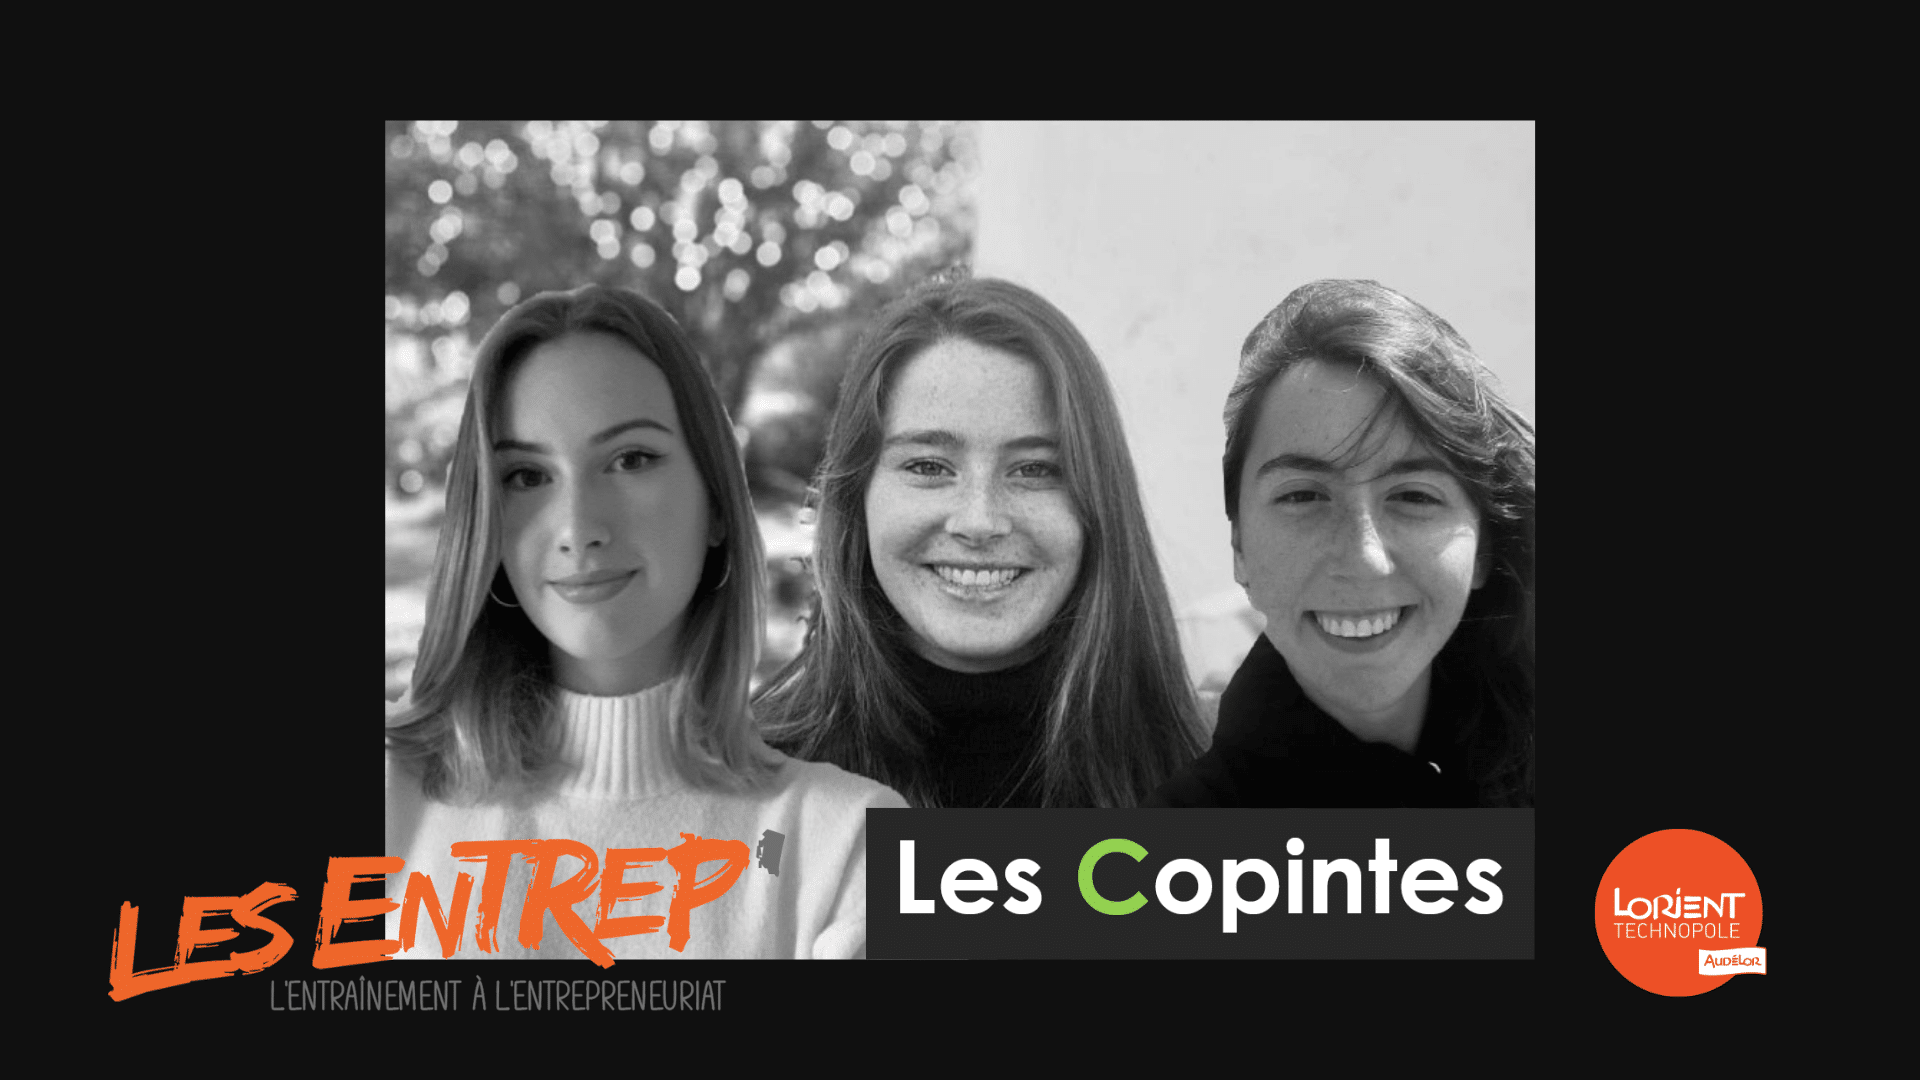 Les Entrep’ | Les Copintes, campus de Lorient, remportent le prix Morbihan